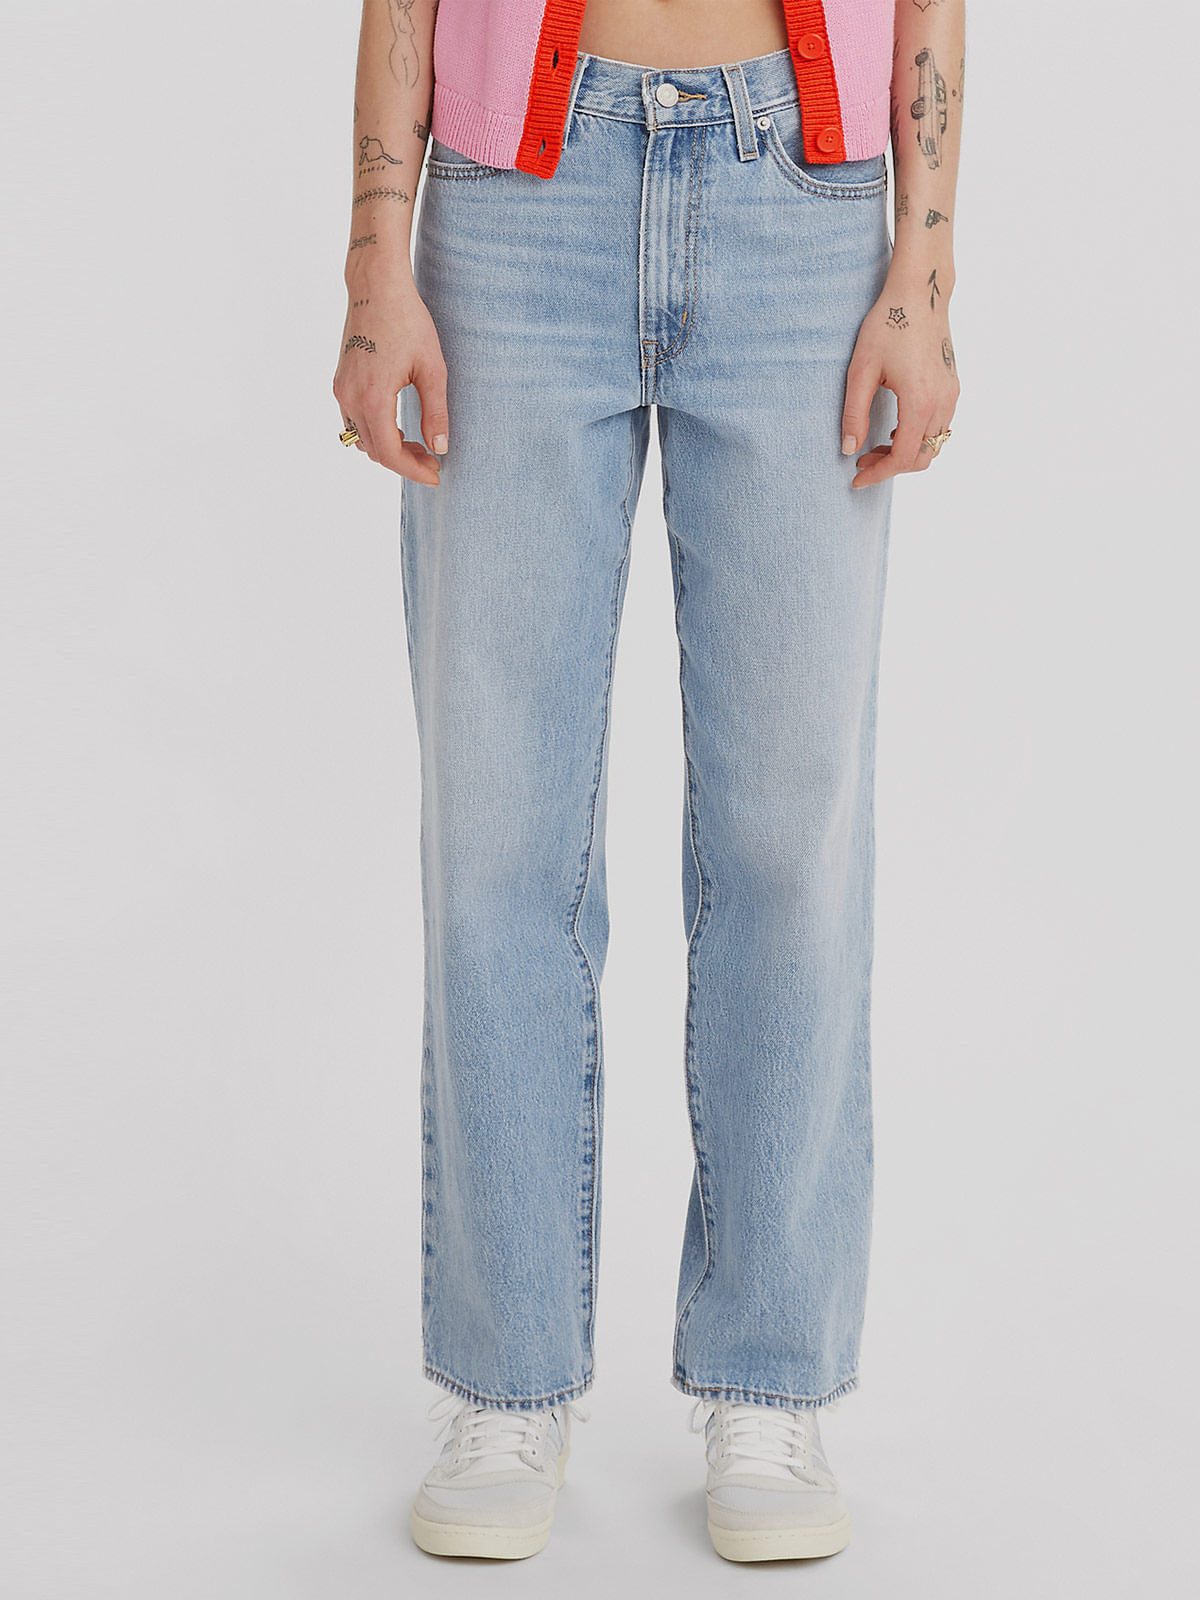 Jeans y Pantalones,00501-0115 - Tienda Oficial de Levi's Online en Panama